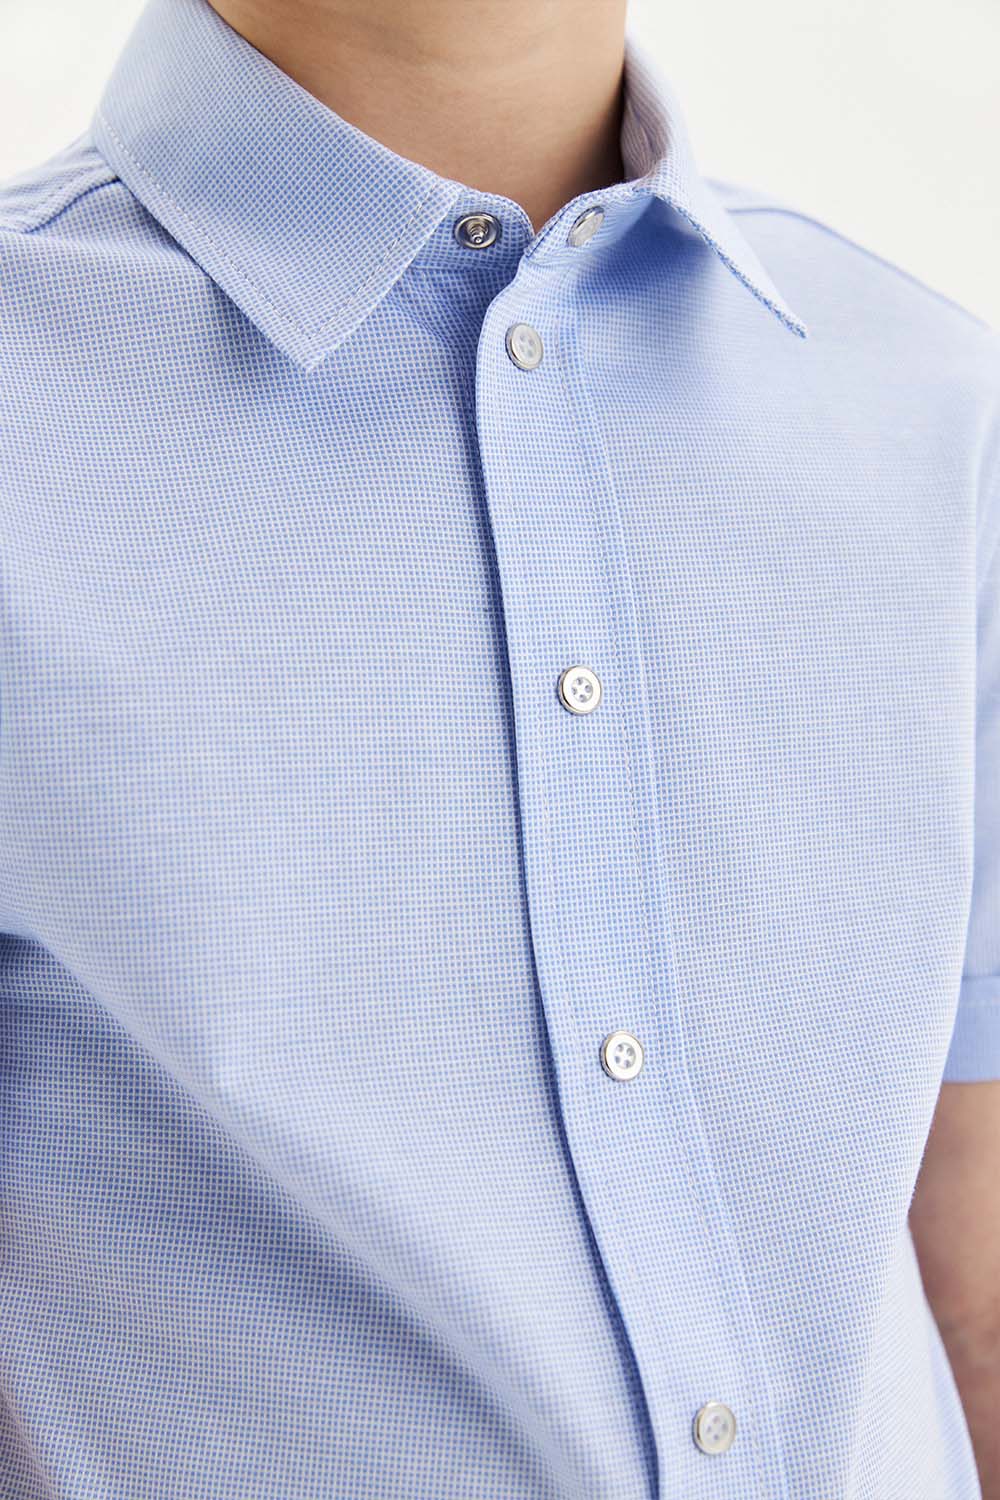 Трикотажная сорочка из 100% хлопка Comfort на кнопках